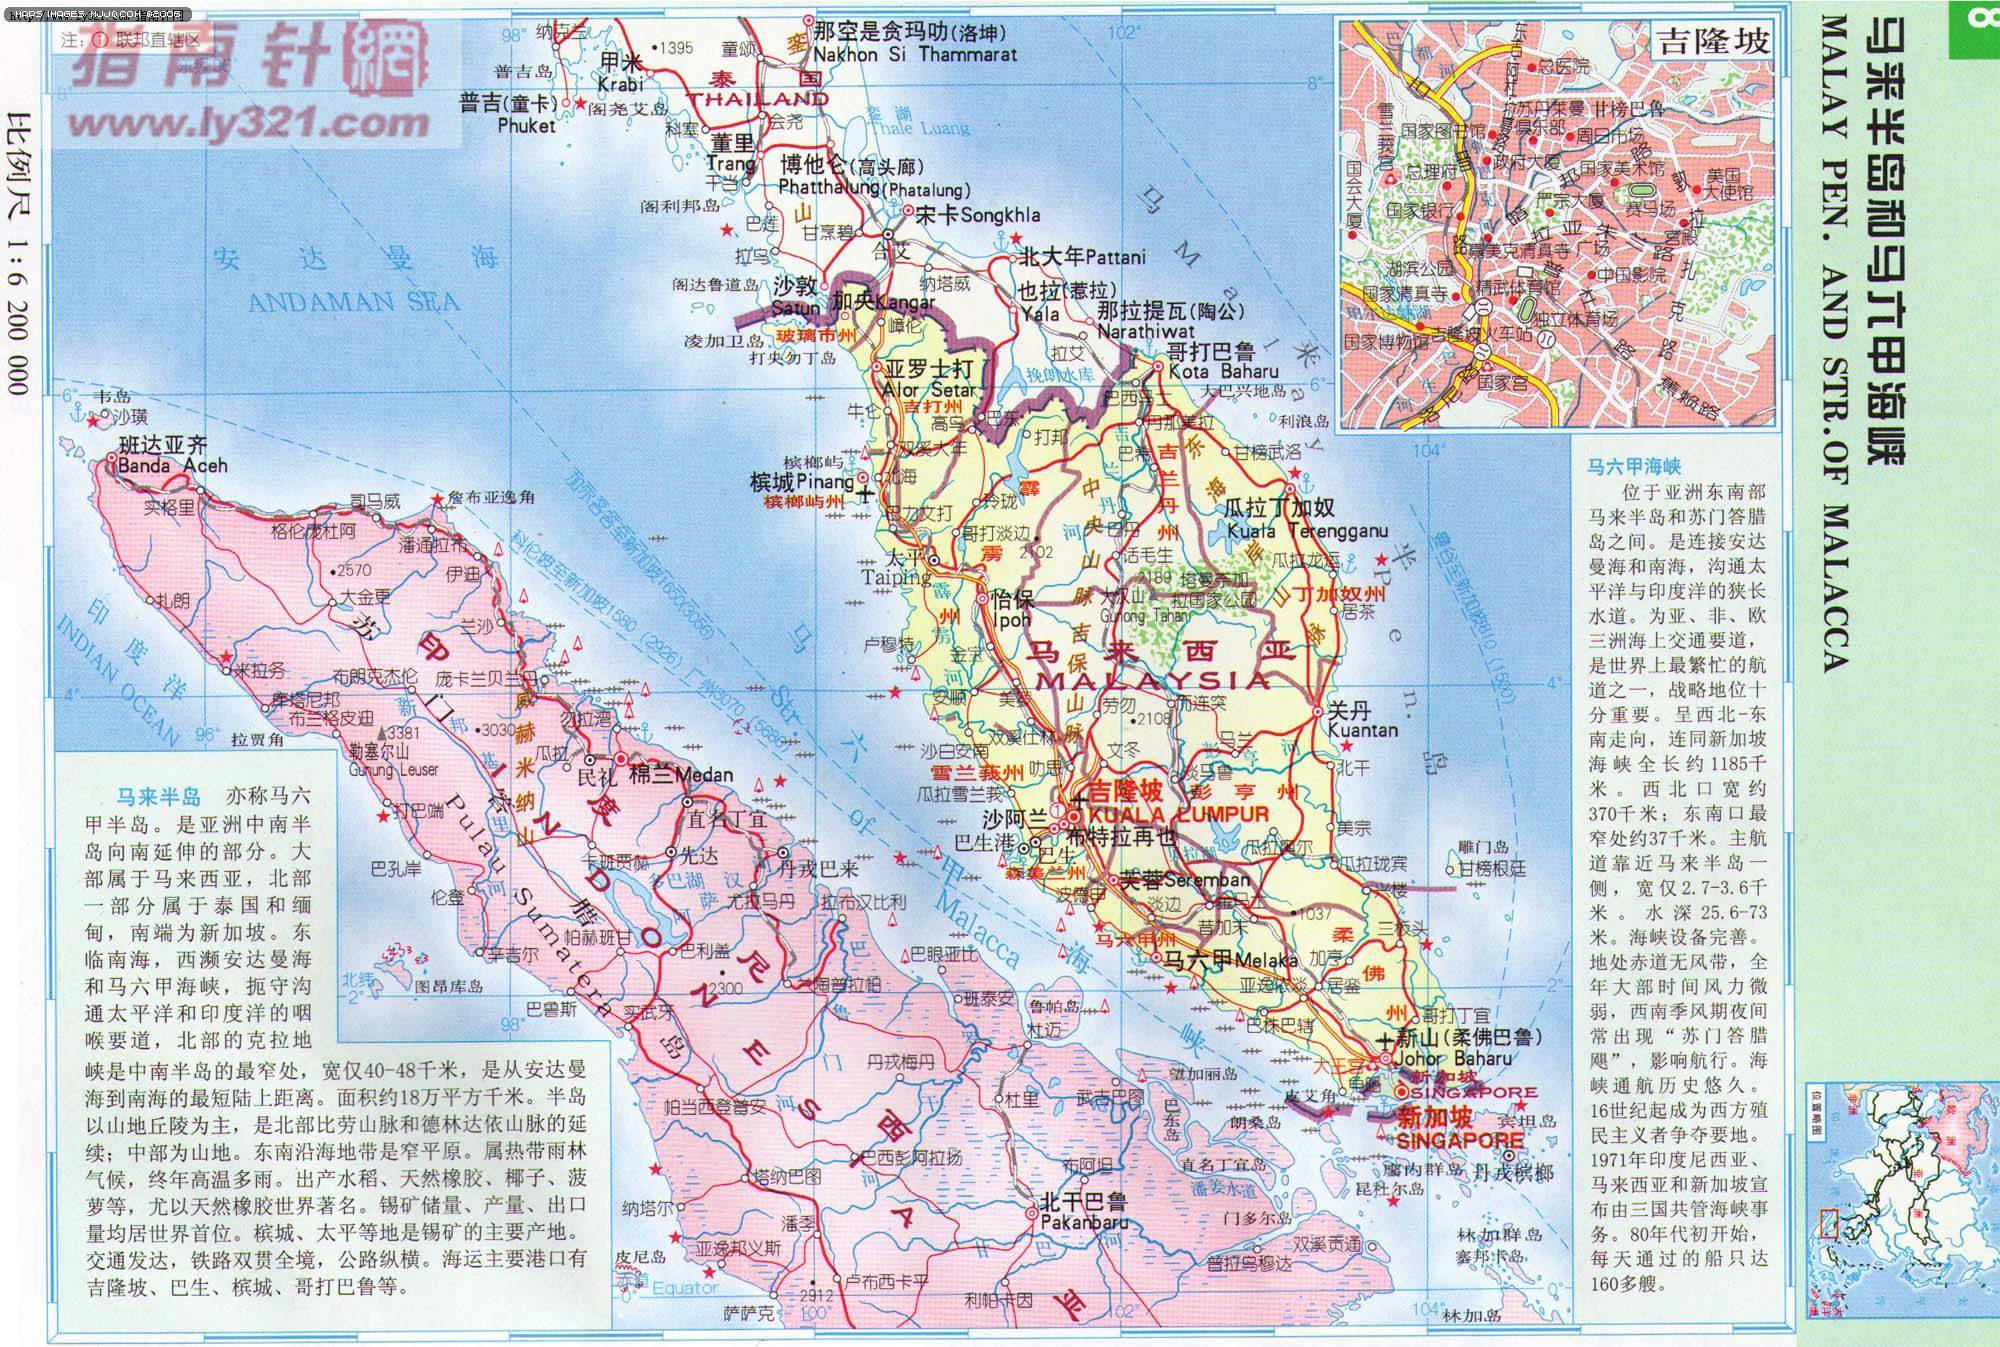 必应美图：波海杜朗岛，马来西亚 2016年6月13日 - 必应壁纸 - 搜索爱好者